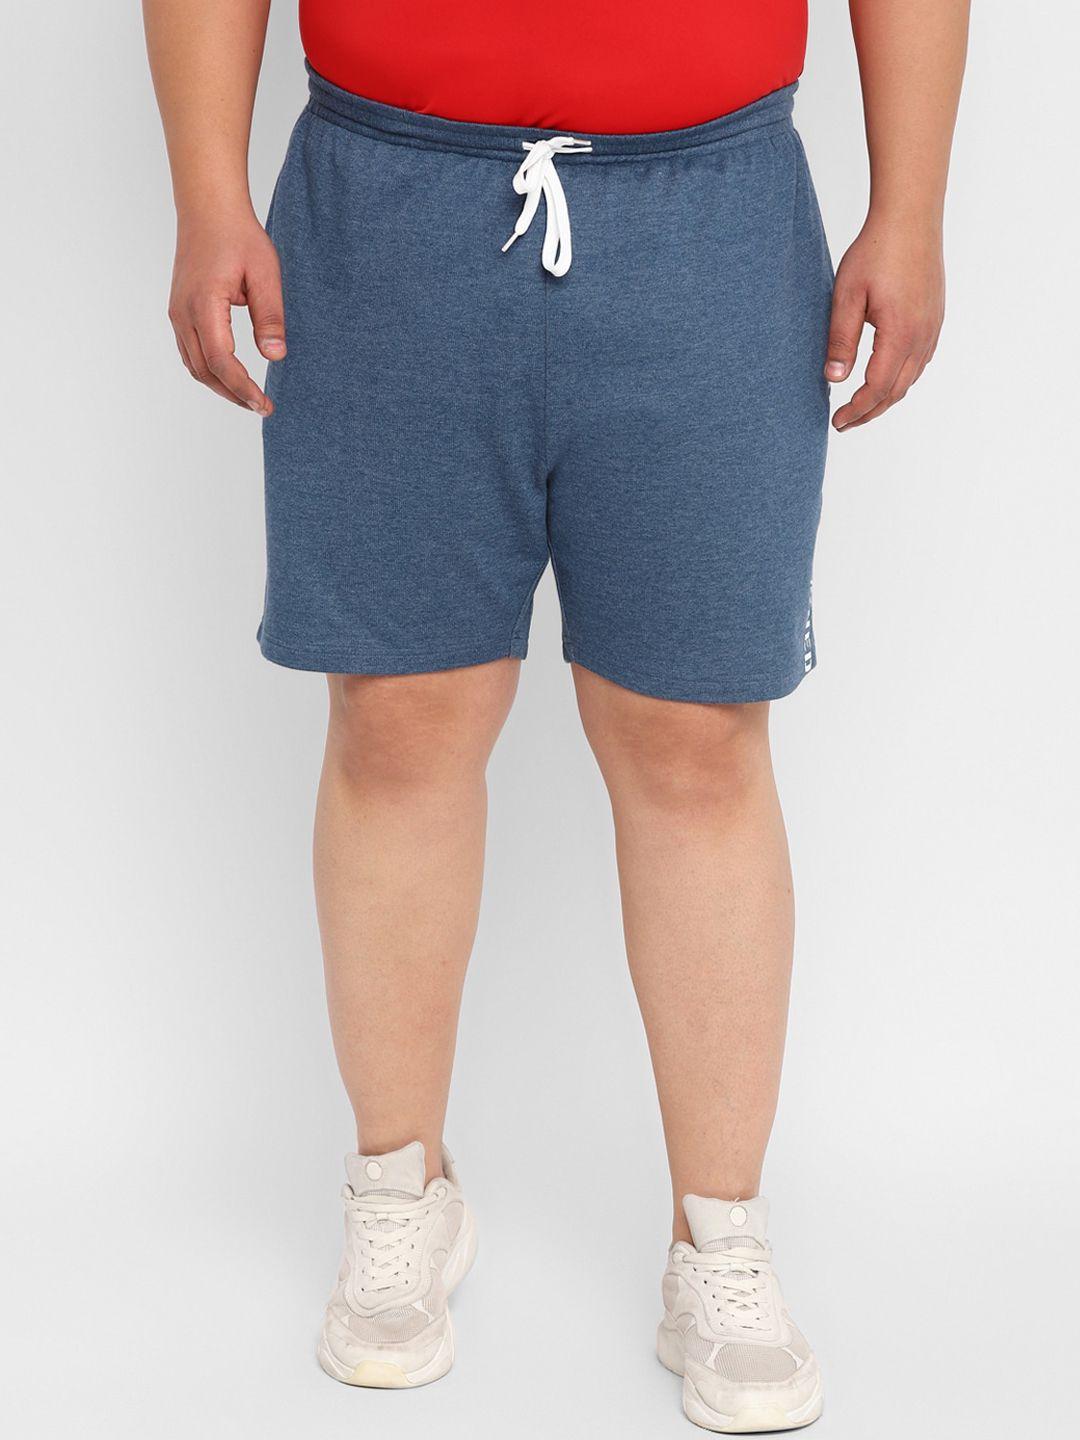 yuuki men plus size cotton sports shorts